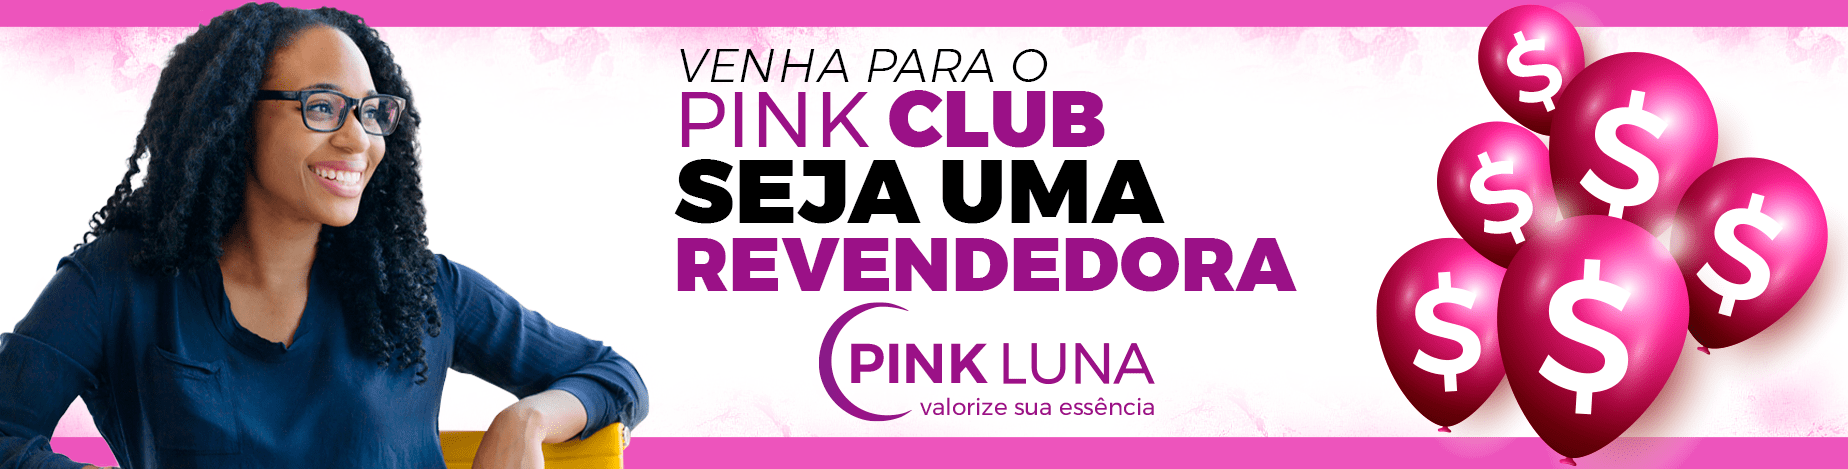 Pink Club - Revendedoras